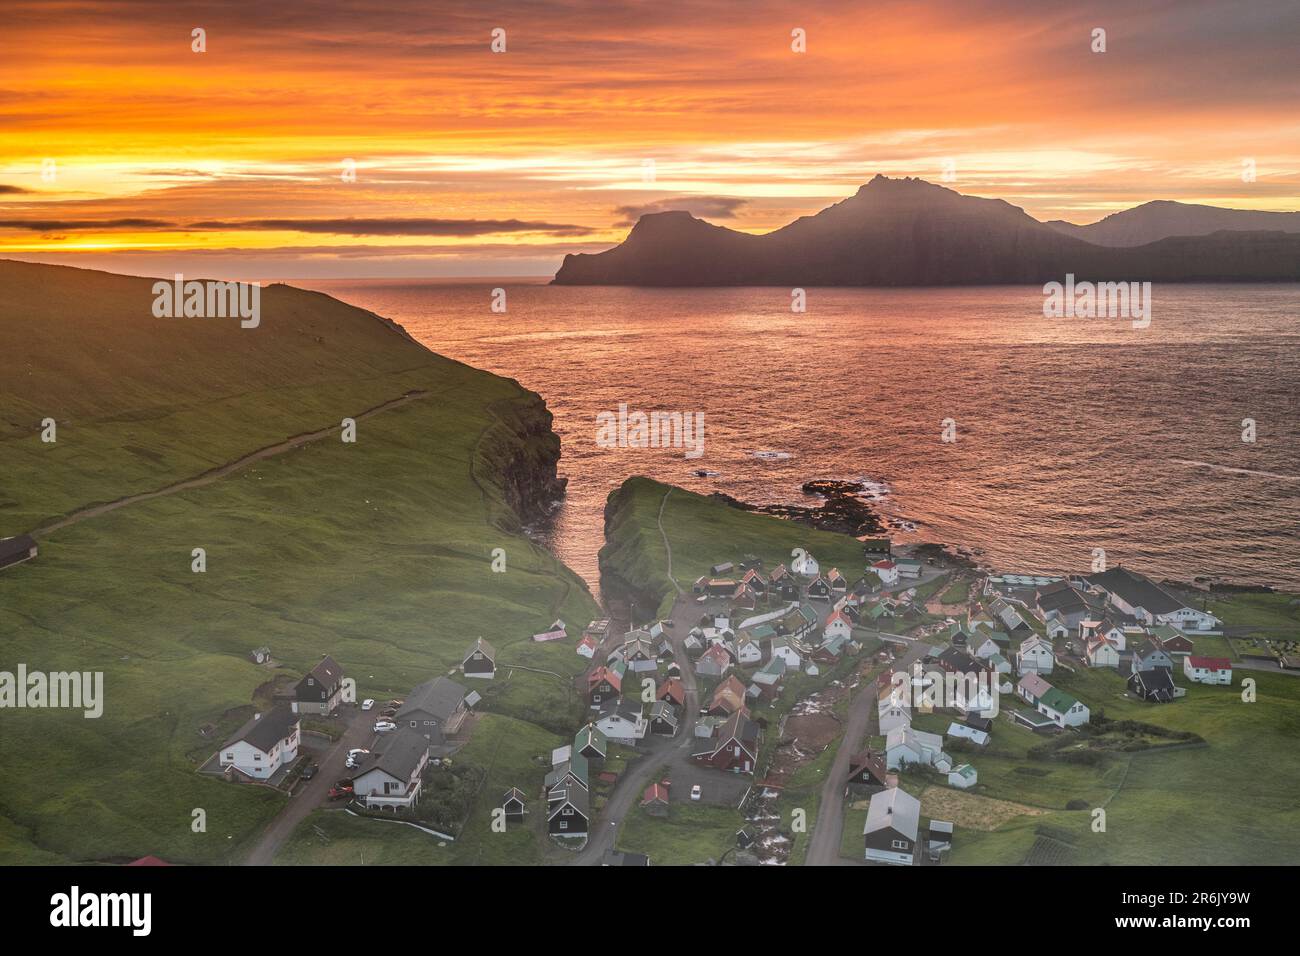 Feuriger Himmel bei Sonnenaufgang über der Insel Kalsoy und dem Dorf Gjogv, Blick von oben, Eysturoy Island, Färöer Inseln, Dänemark, Europa Stockfoto